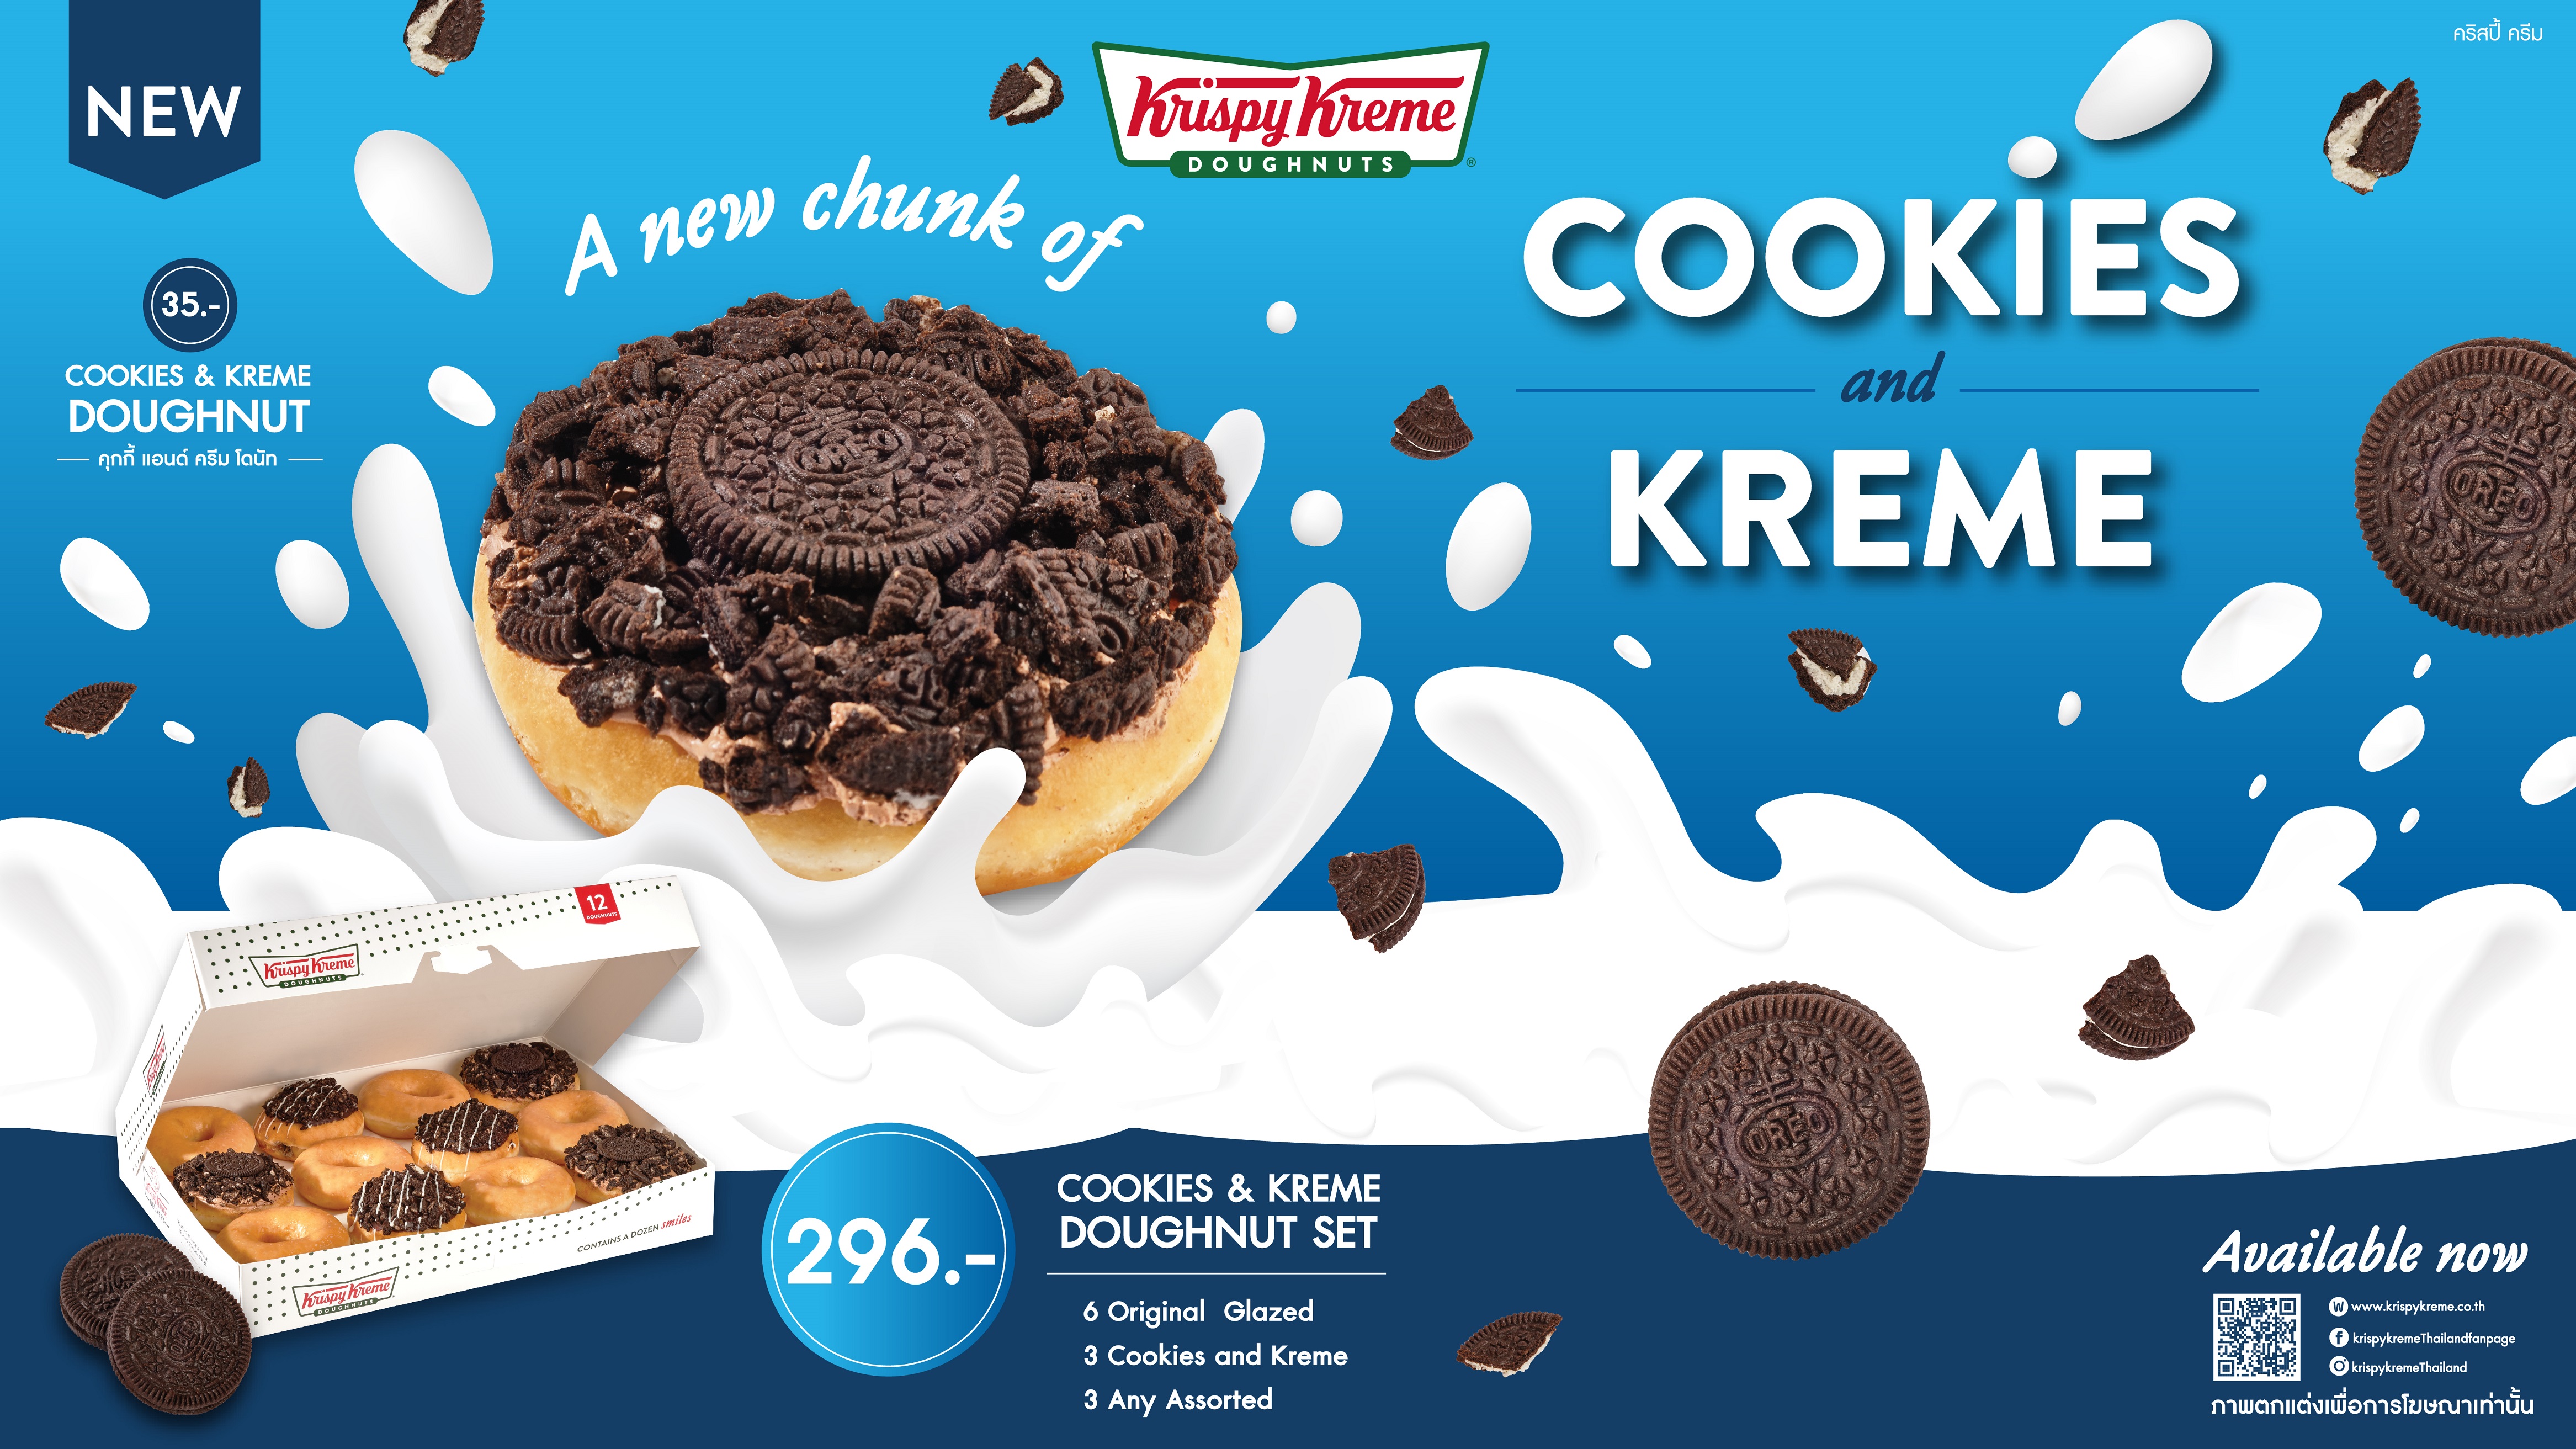 คริสปี้ ครีม คุกกี้ แอนด์ ครีม ซี่รี่ย์ใหม่! A New Chunk of Cookies Kreme เอาใจคนรักฮาเซลนัท